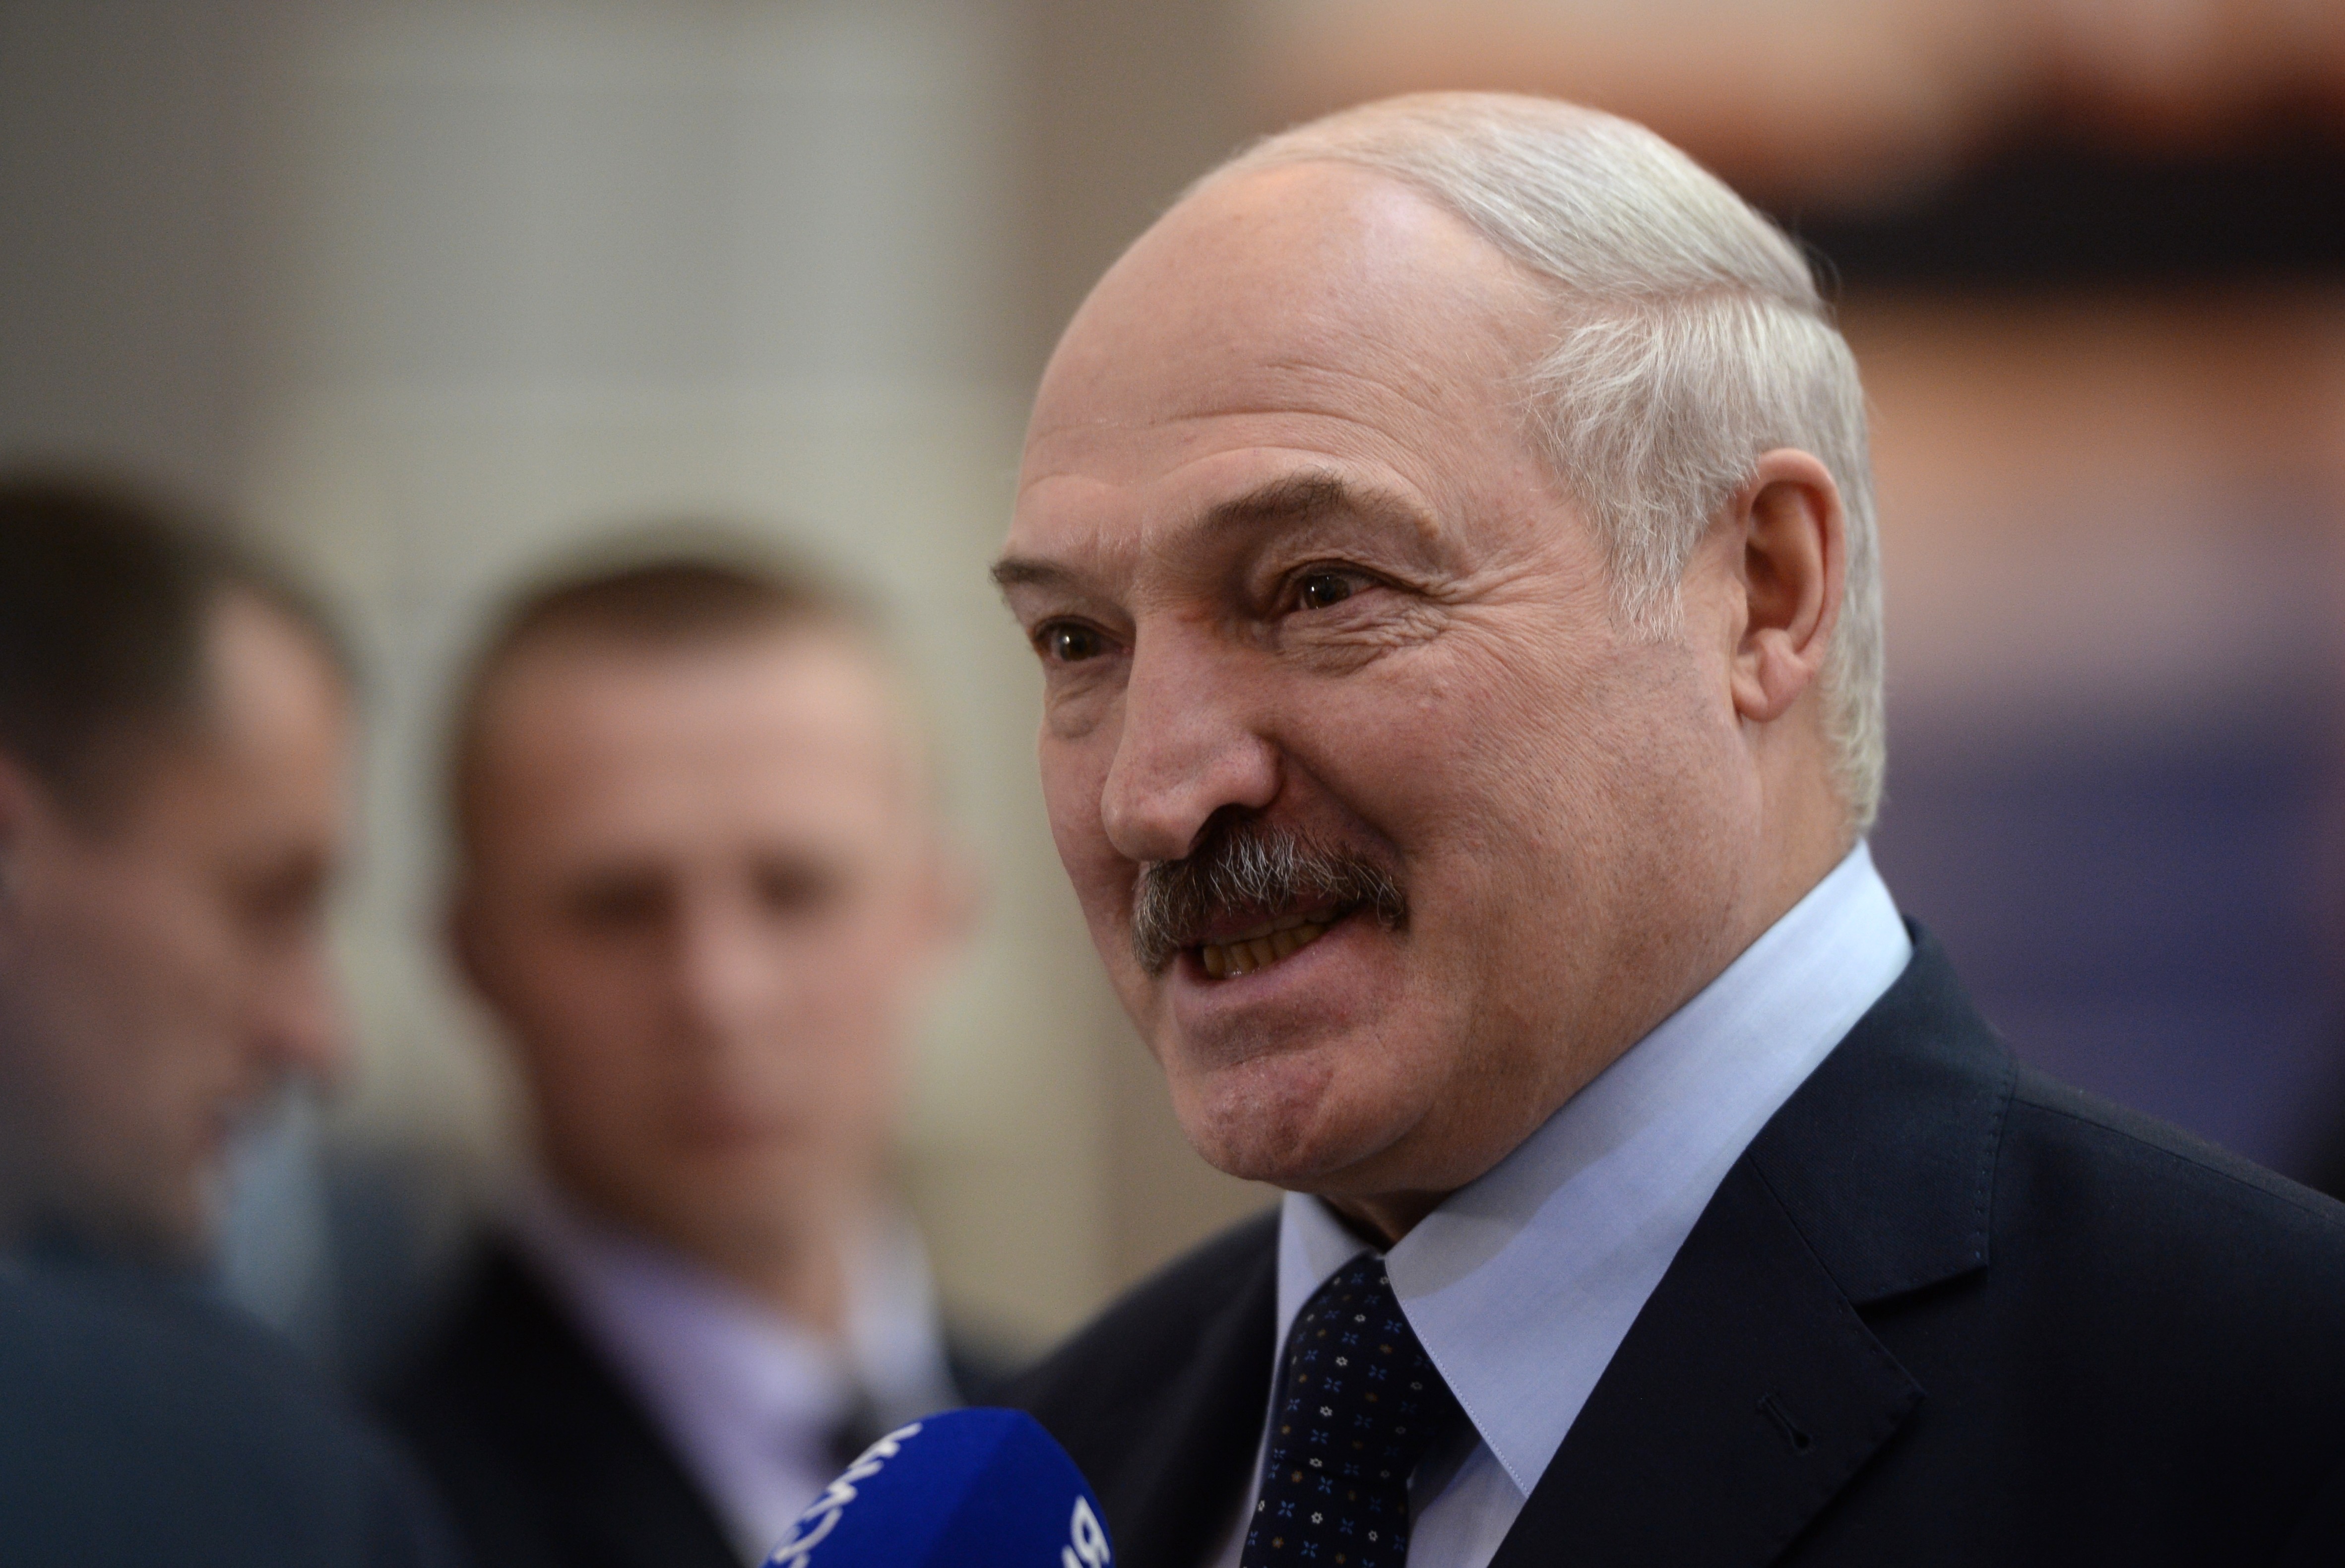 Поздравление С Новым Годом Лукашенко 2021